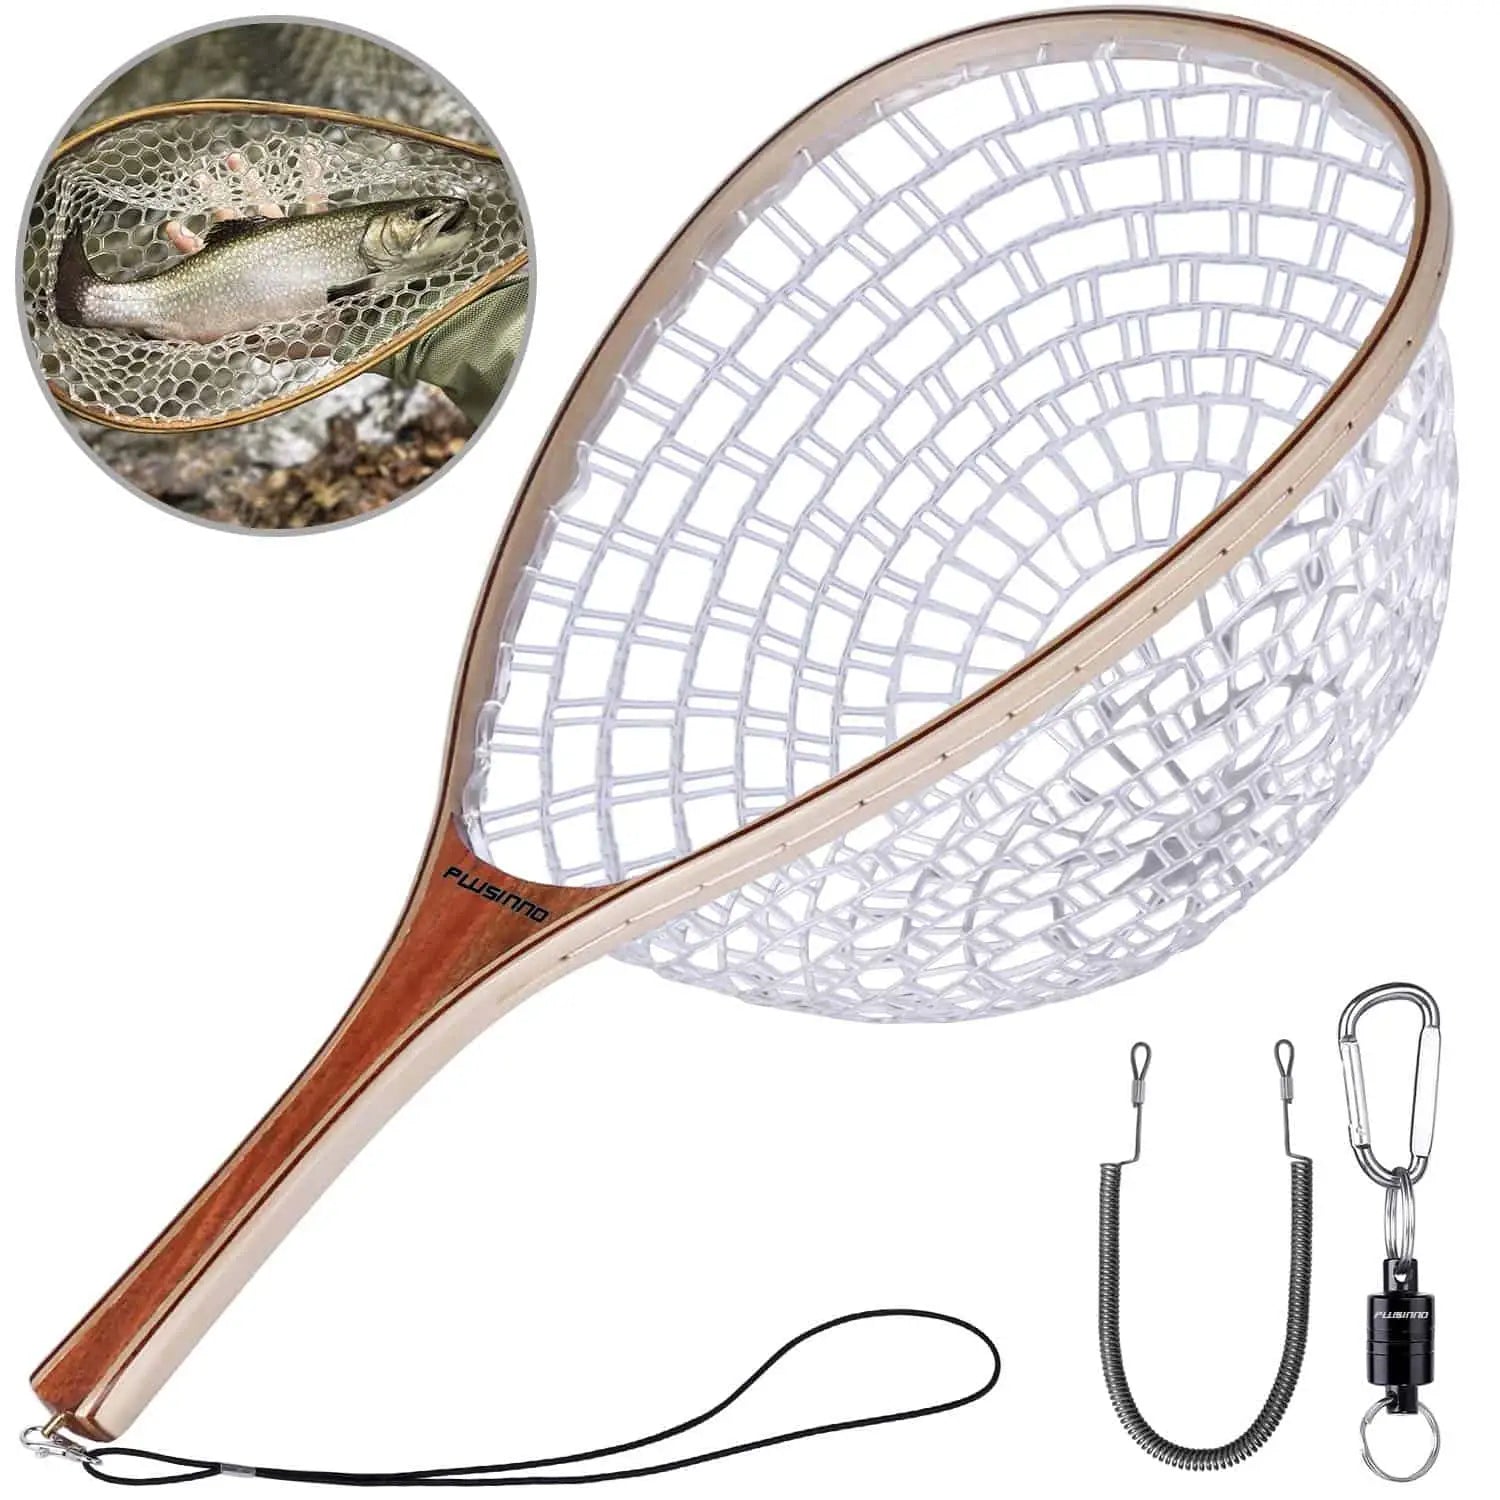 NetAngler Fishing Net, Fly Fishing Net with Magnetic Release